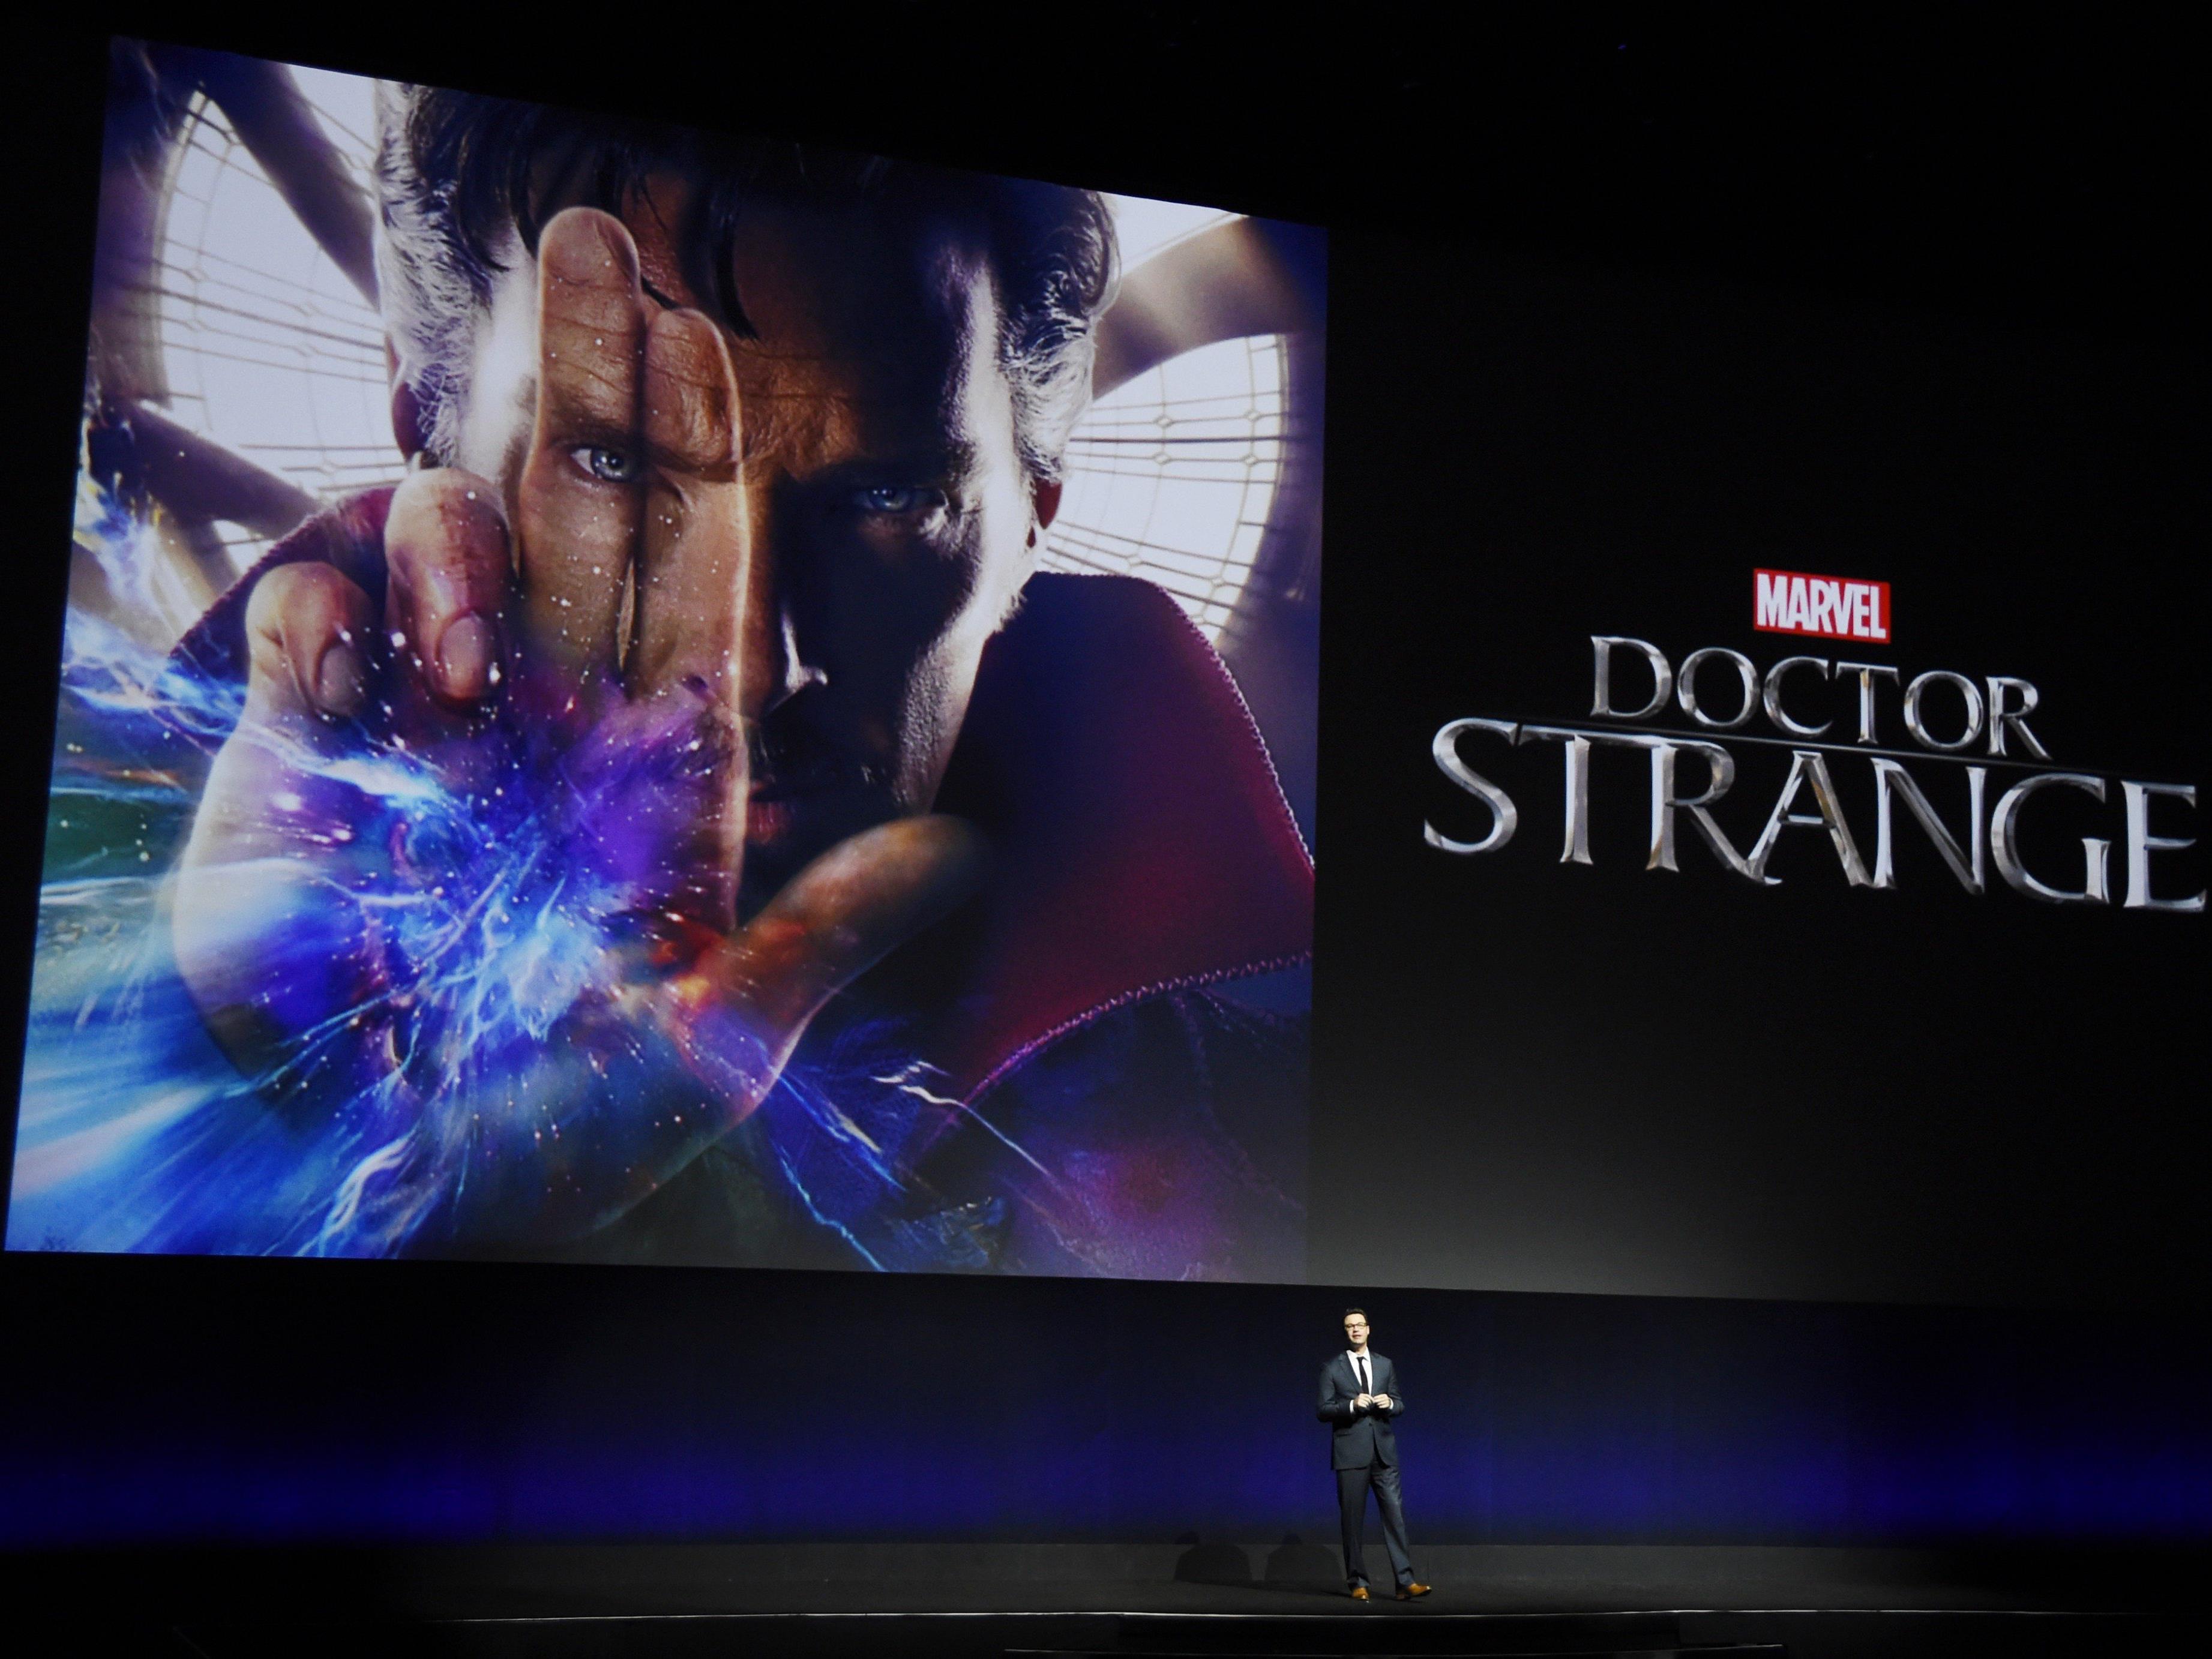 Marvel bringt mit "Doctor Strange" einen neuen Superhelden ins Kino.